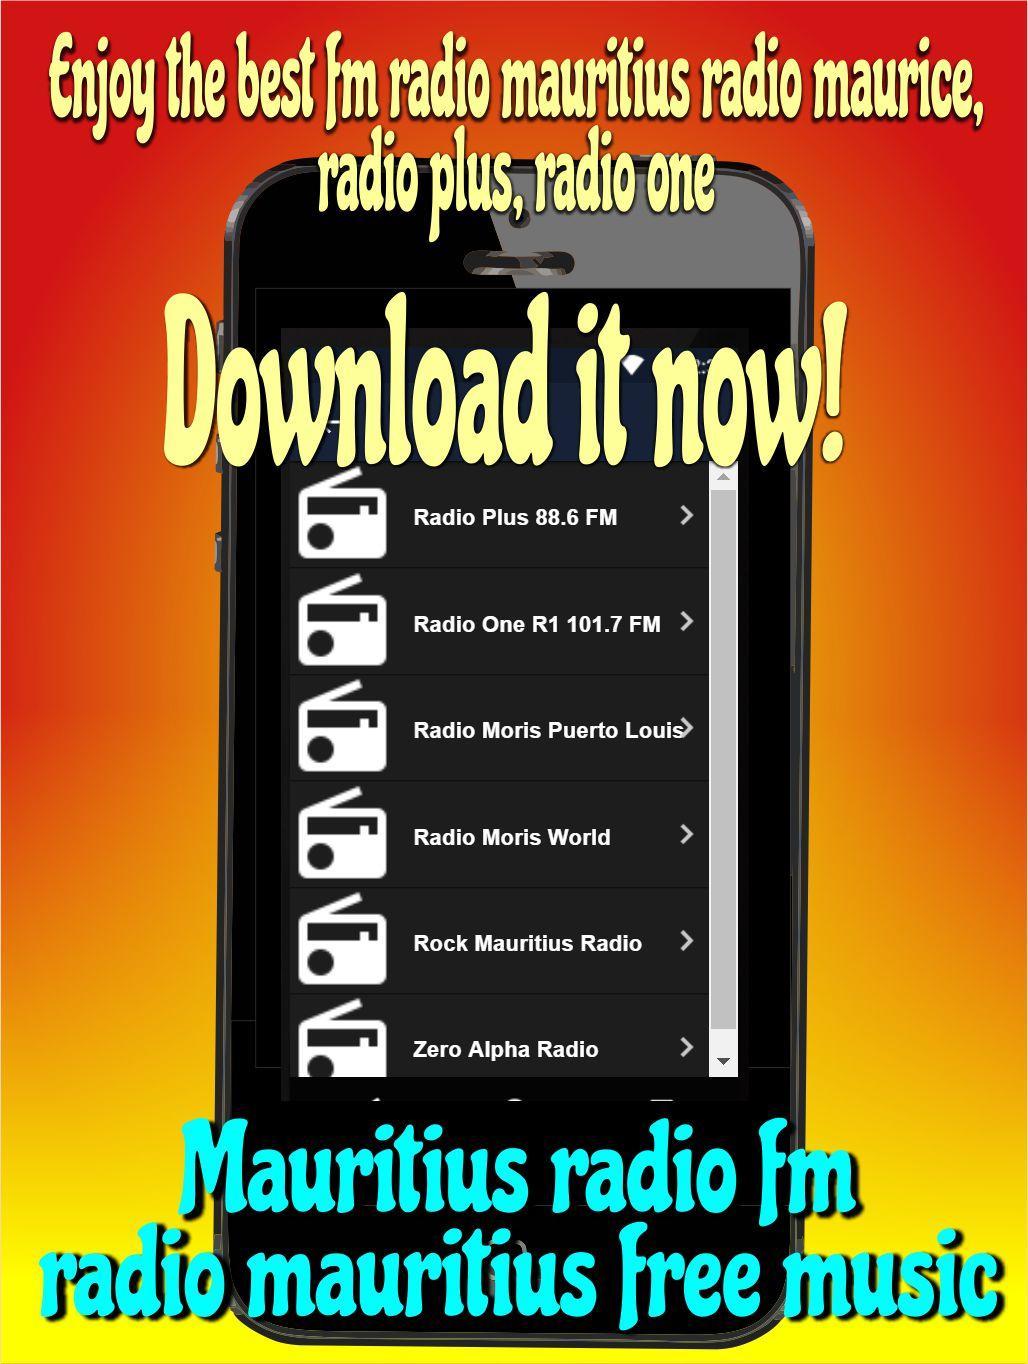 Mauritius radio fm radio mauritius free music for Android - APK Download